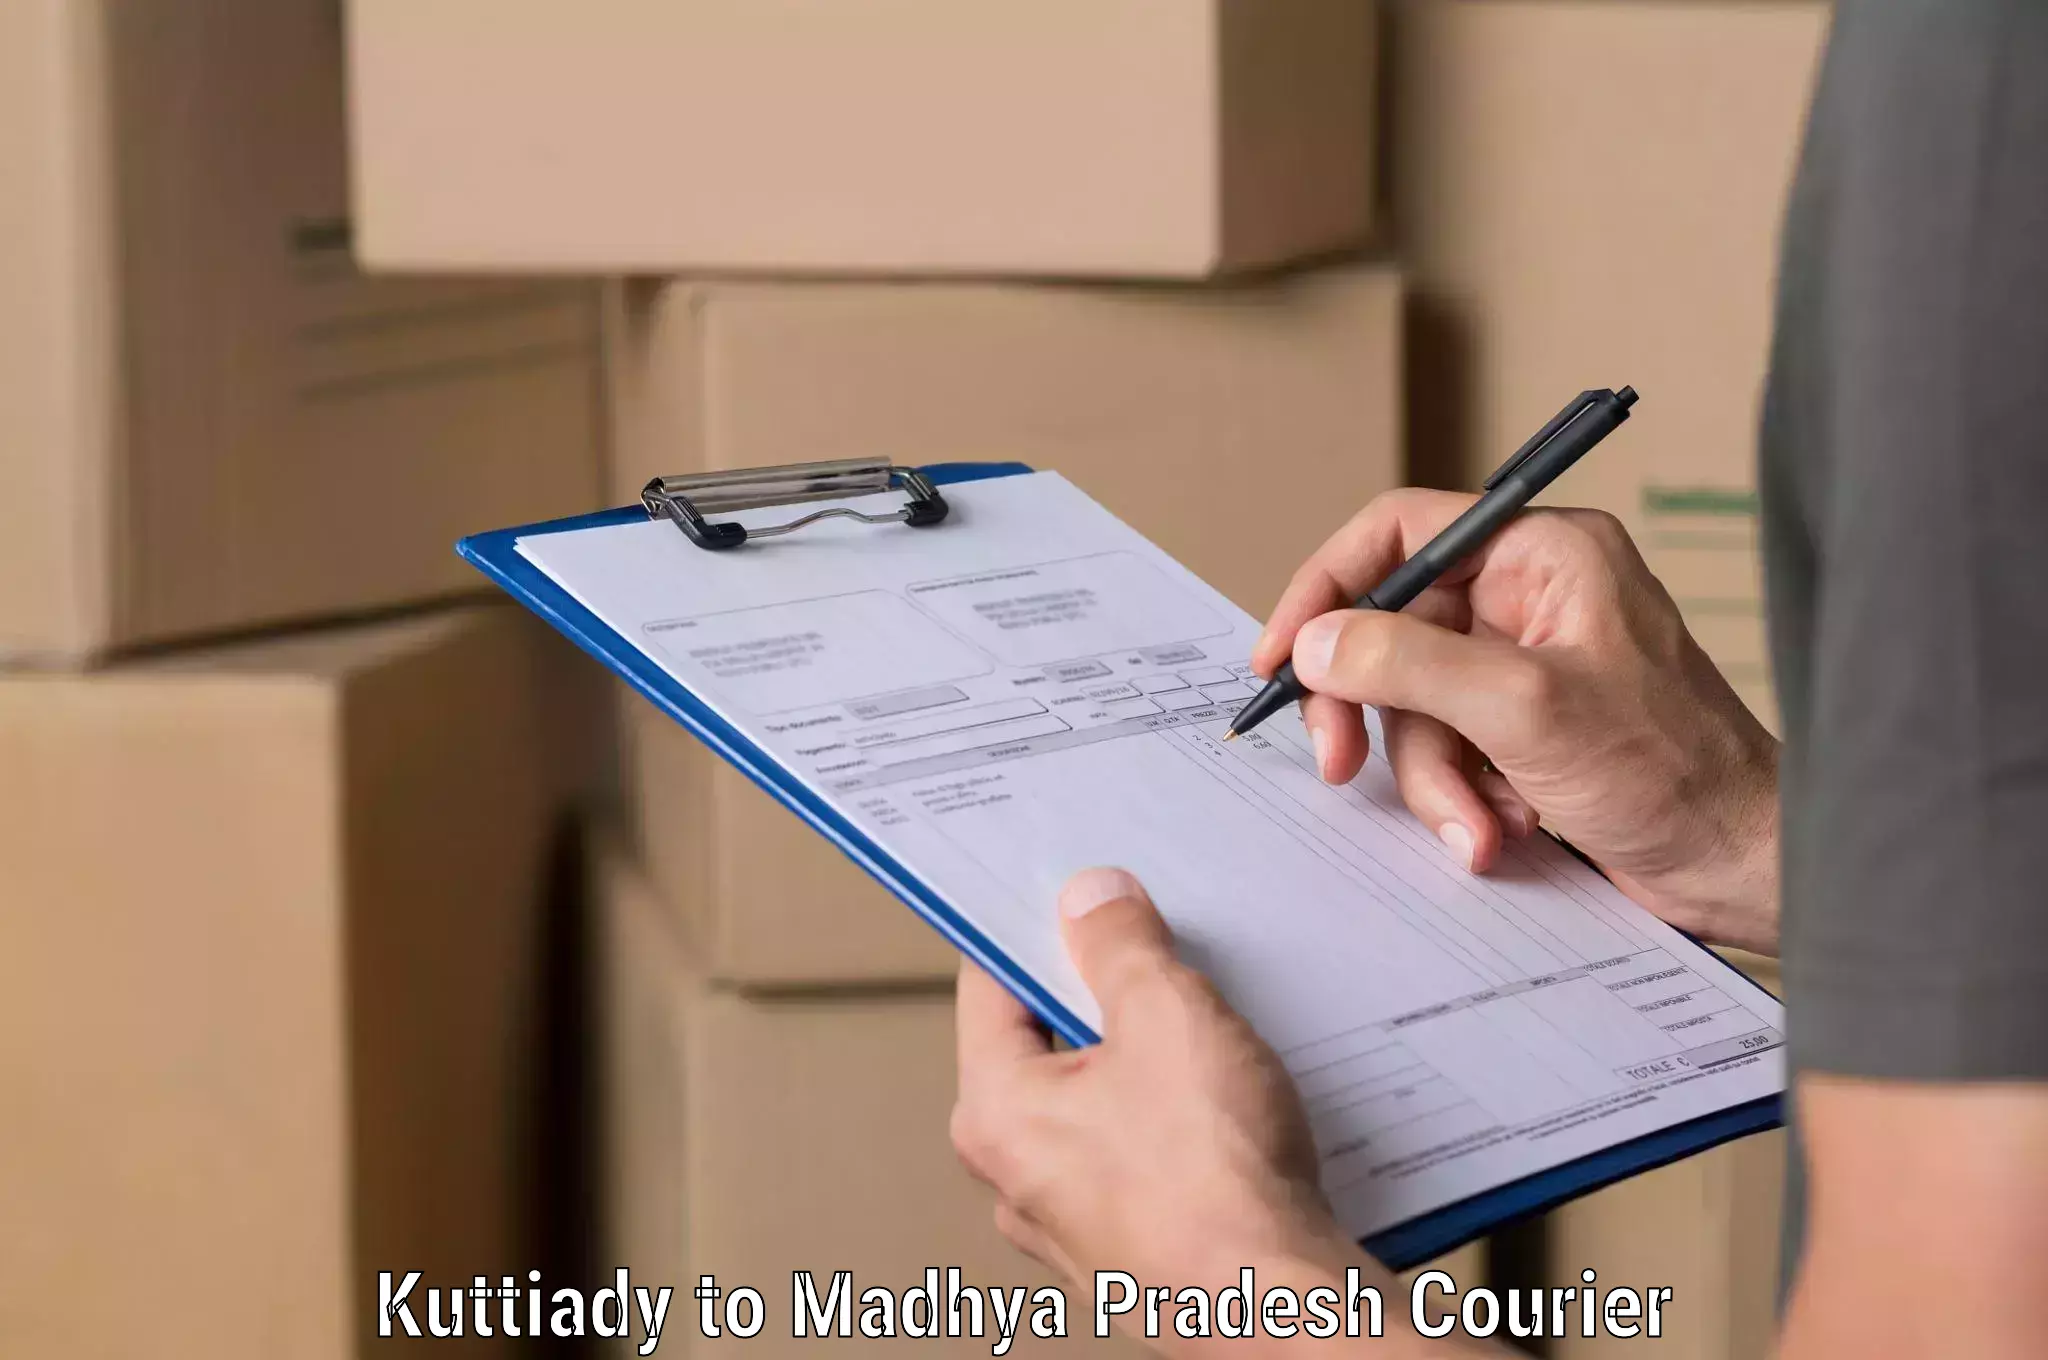 Courier service innovation Kuttiady to Hatta